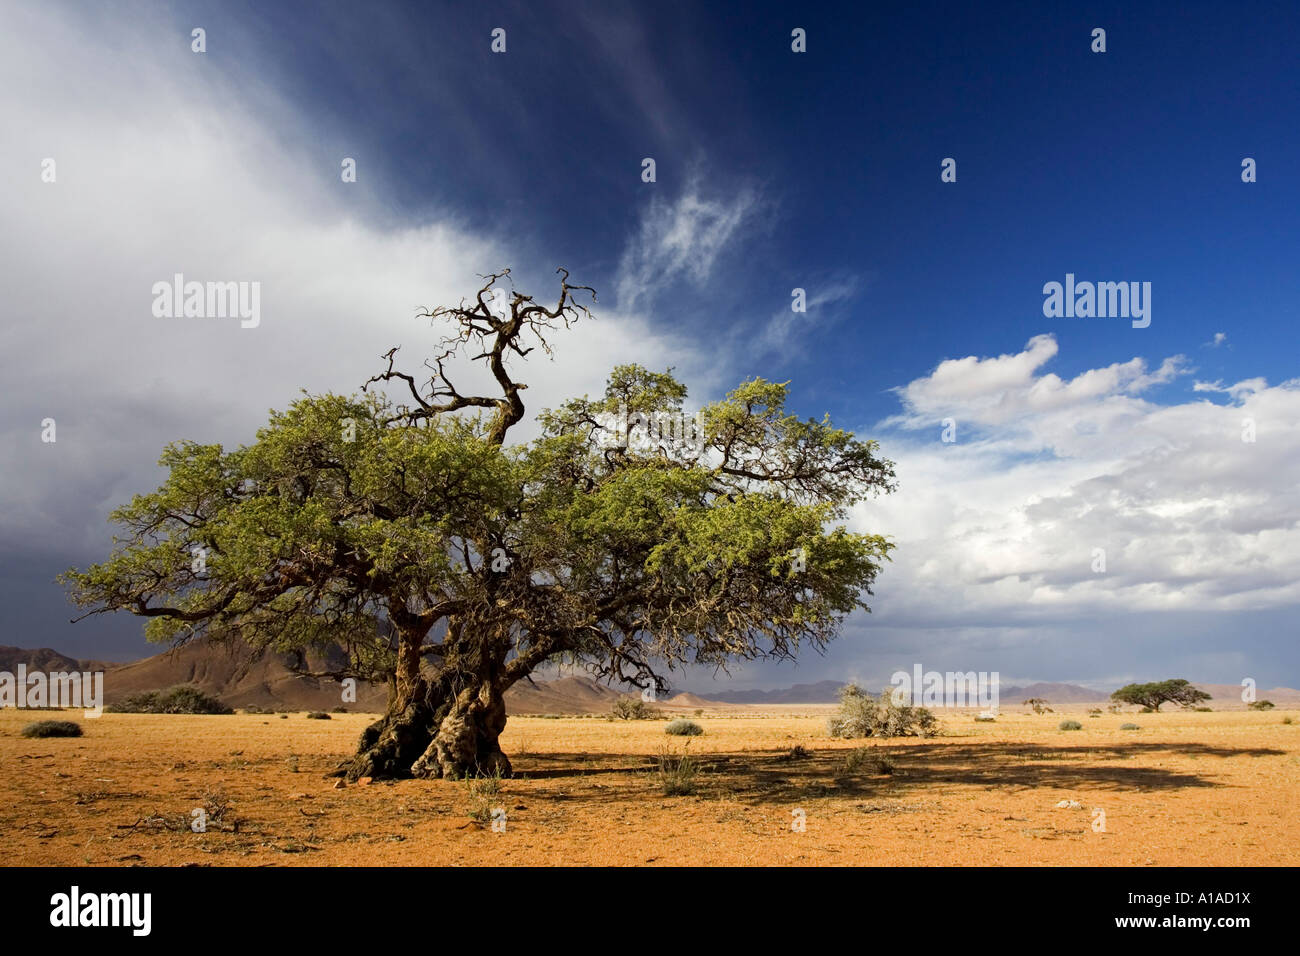 Upcoming thunderstorm with mountains and a tree. Tiras Mountains, Farm Koiimasis, Namibia Stock Photo